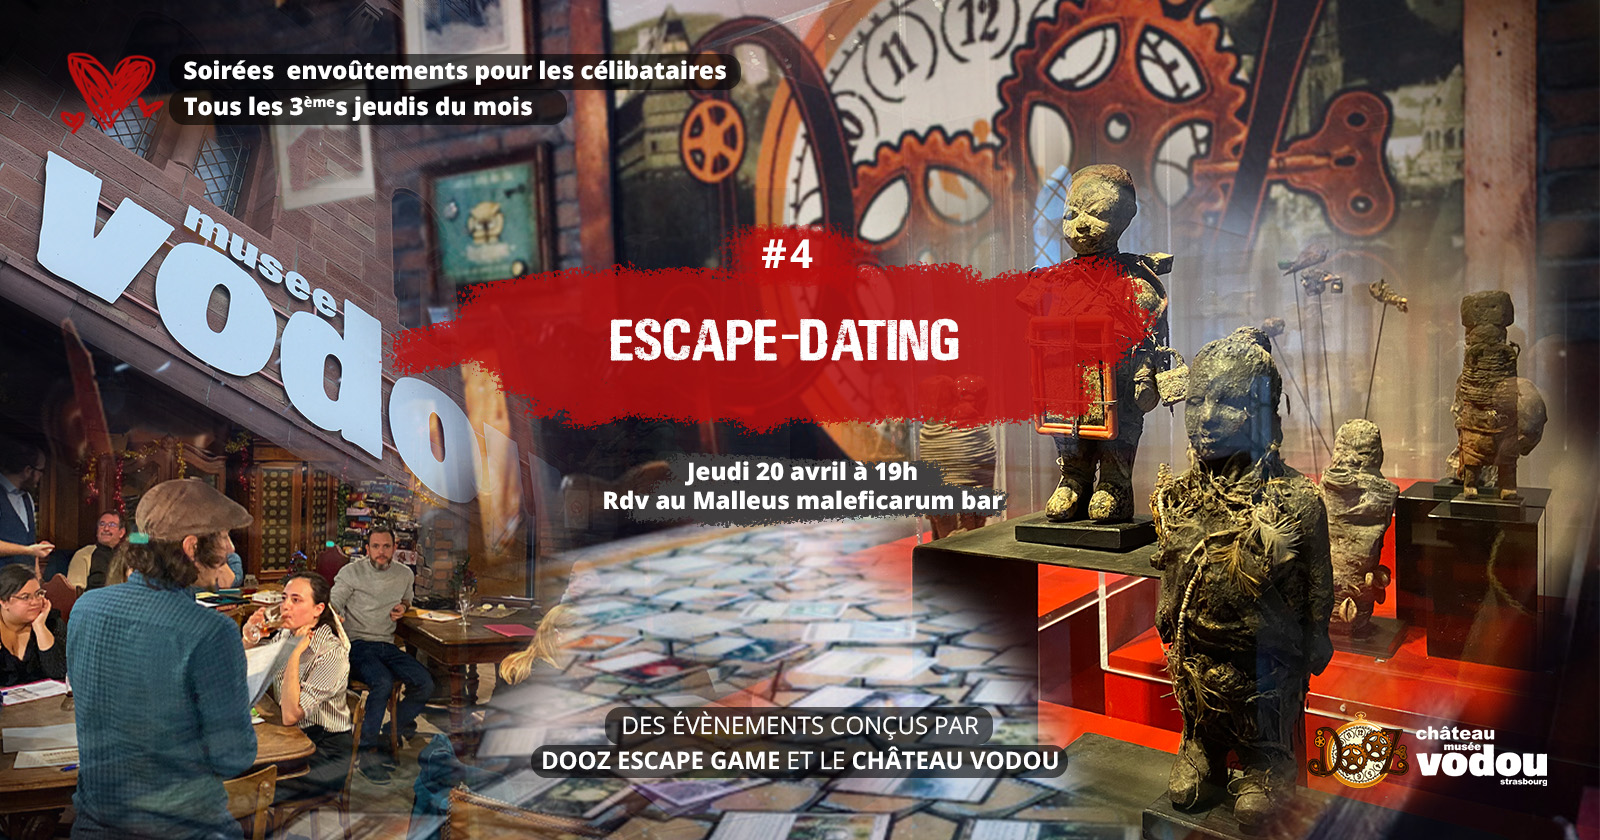 Escape Dating - Soirée envoûtement #4, réservée aux célibataires